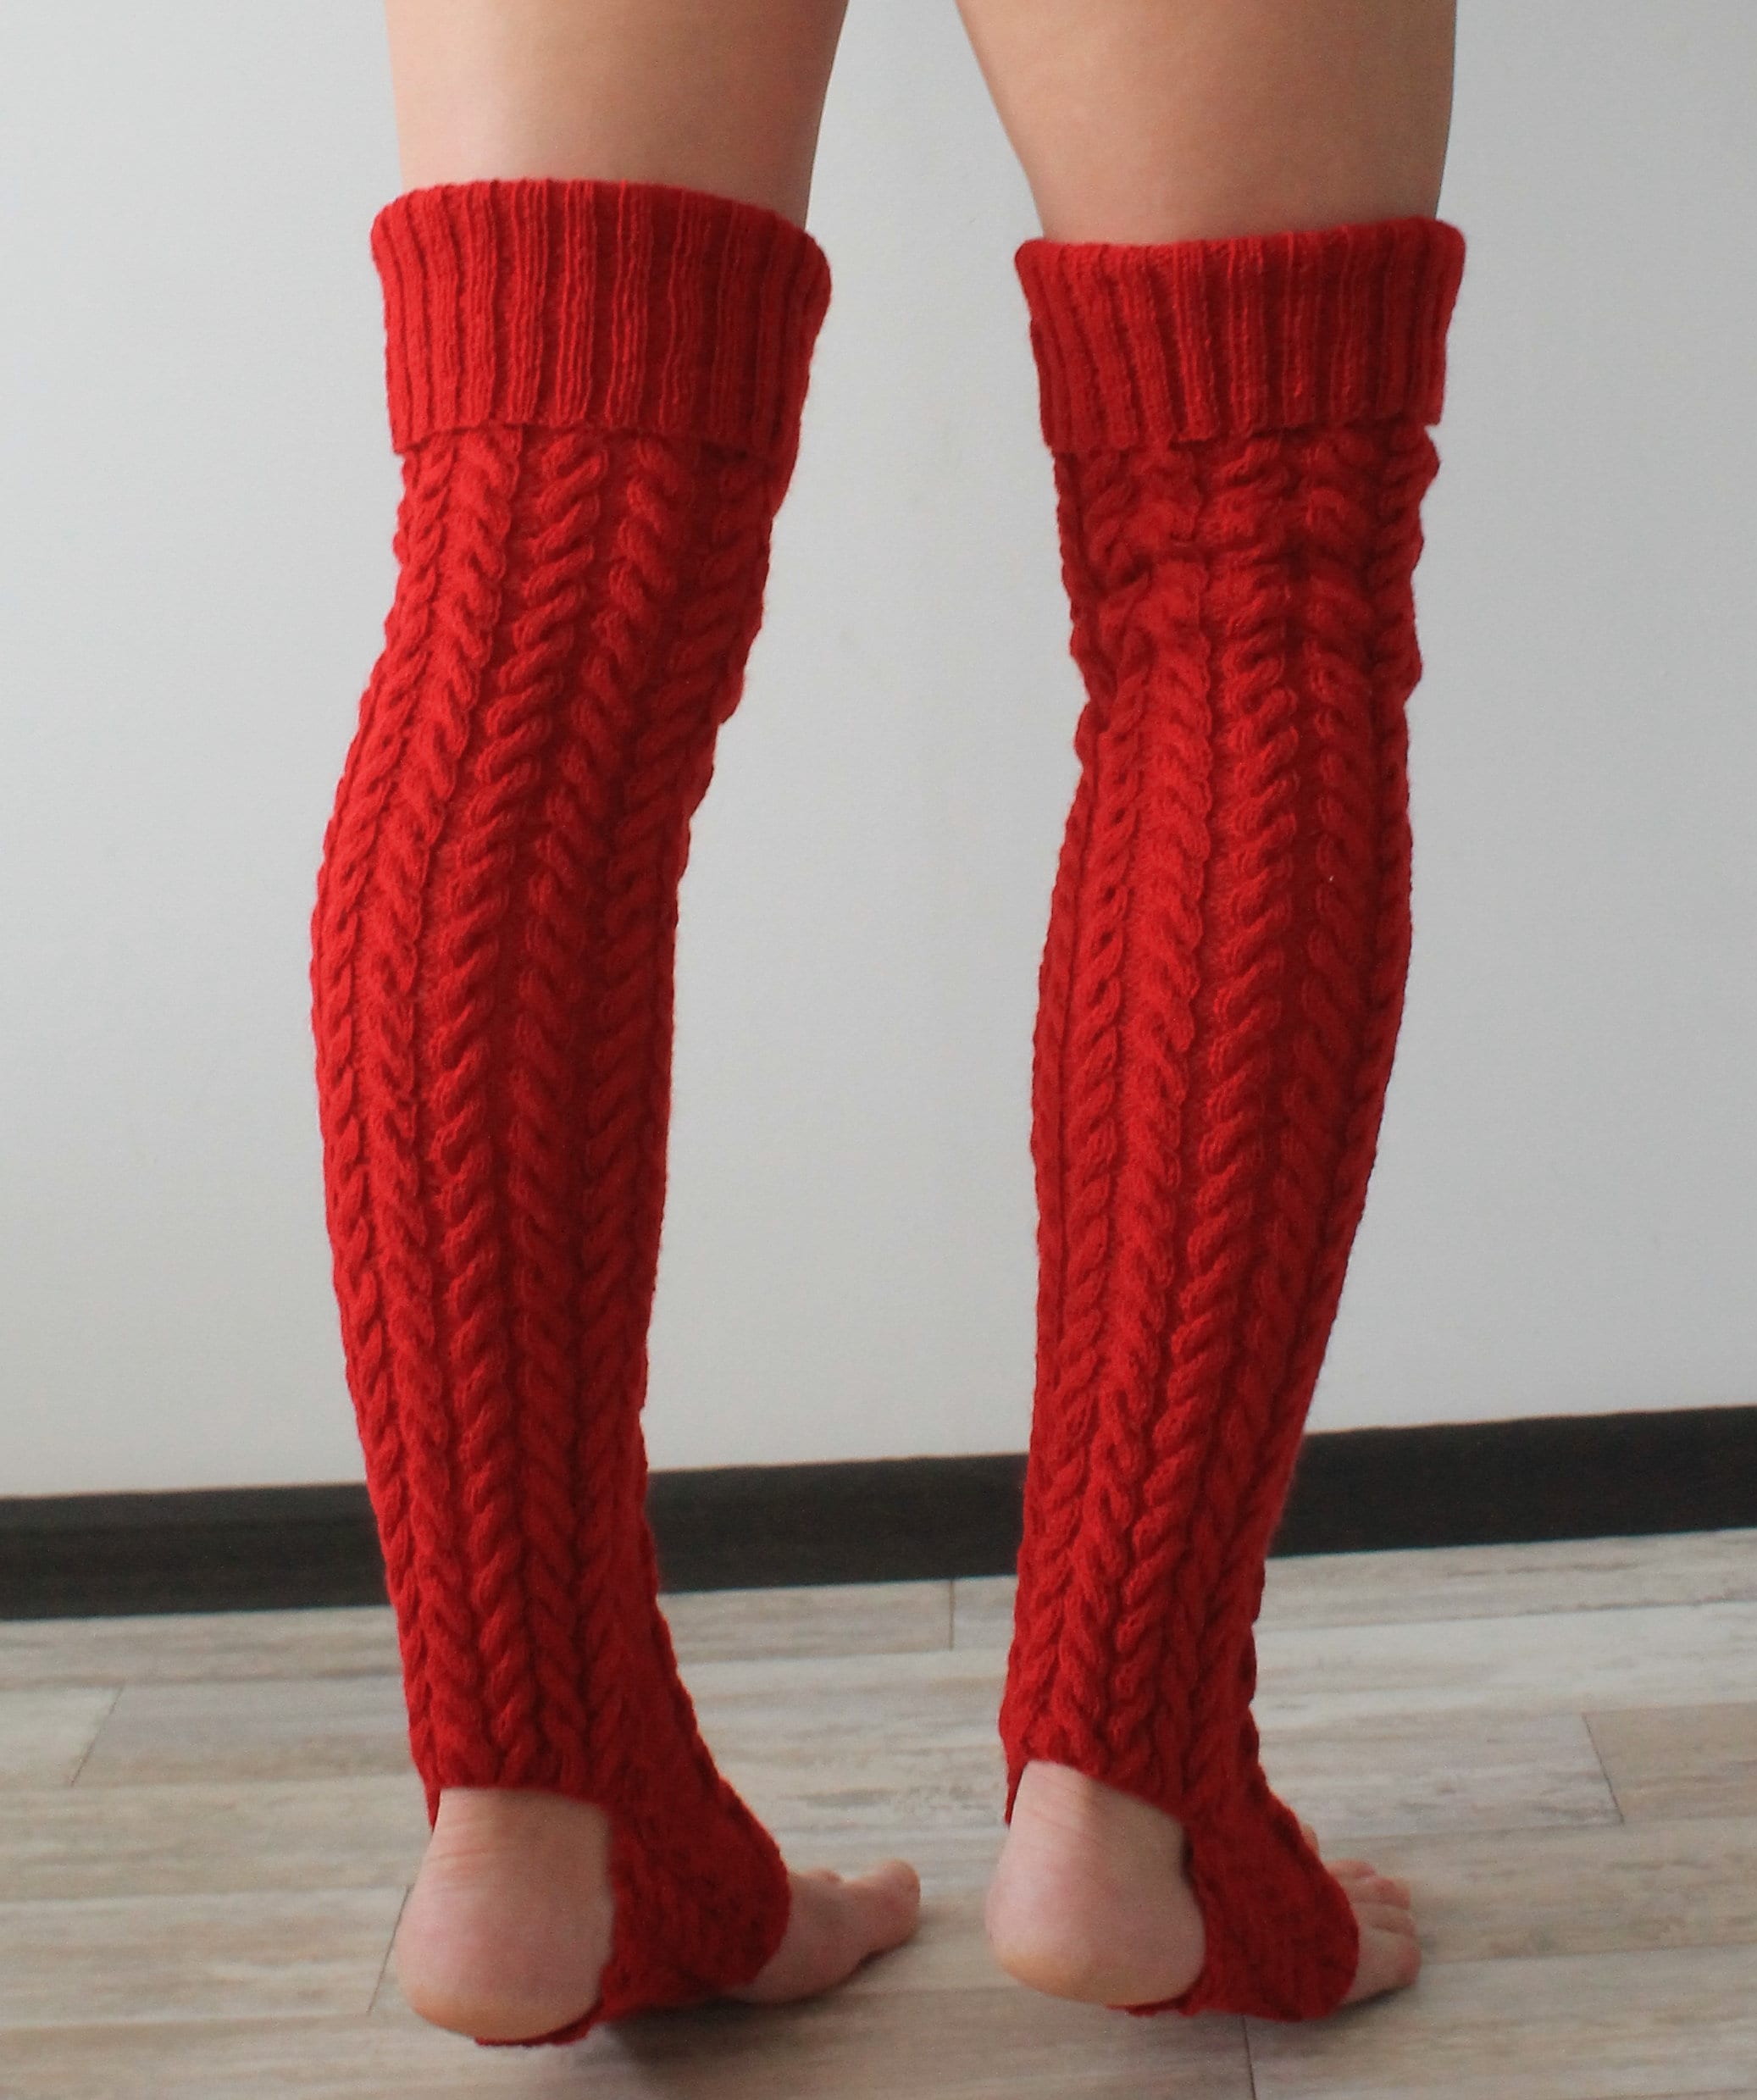 Yoga Socks Thigh High Socks Womens Leg Warmers | Etsy